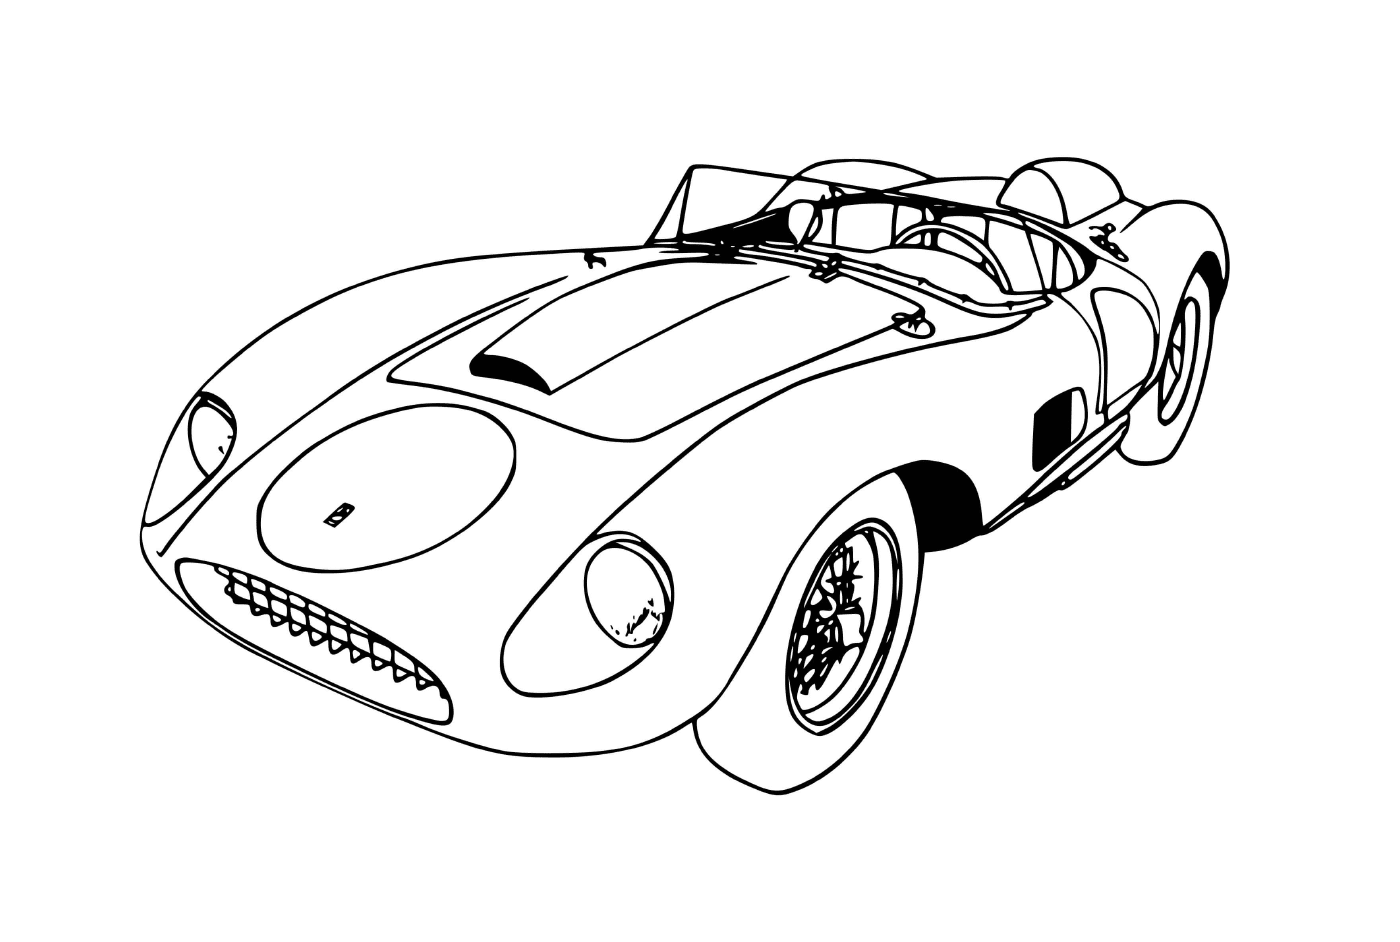  A Автомобиль Ferrari f70 